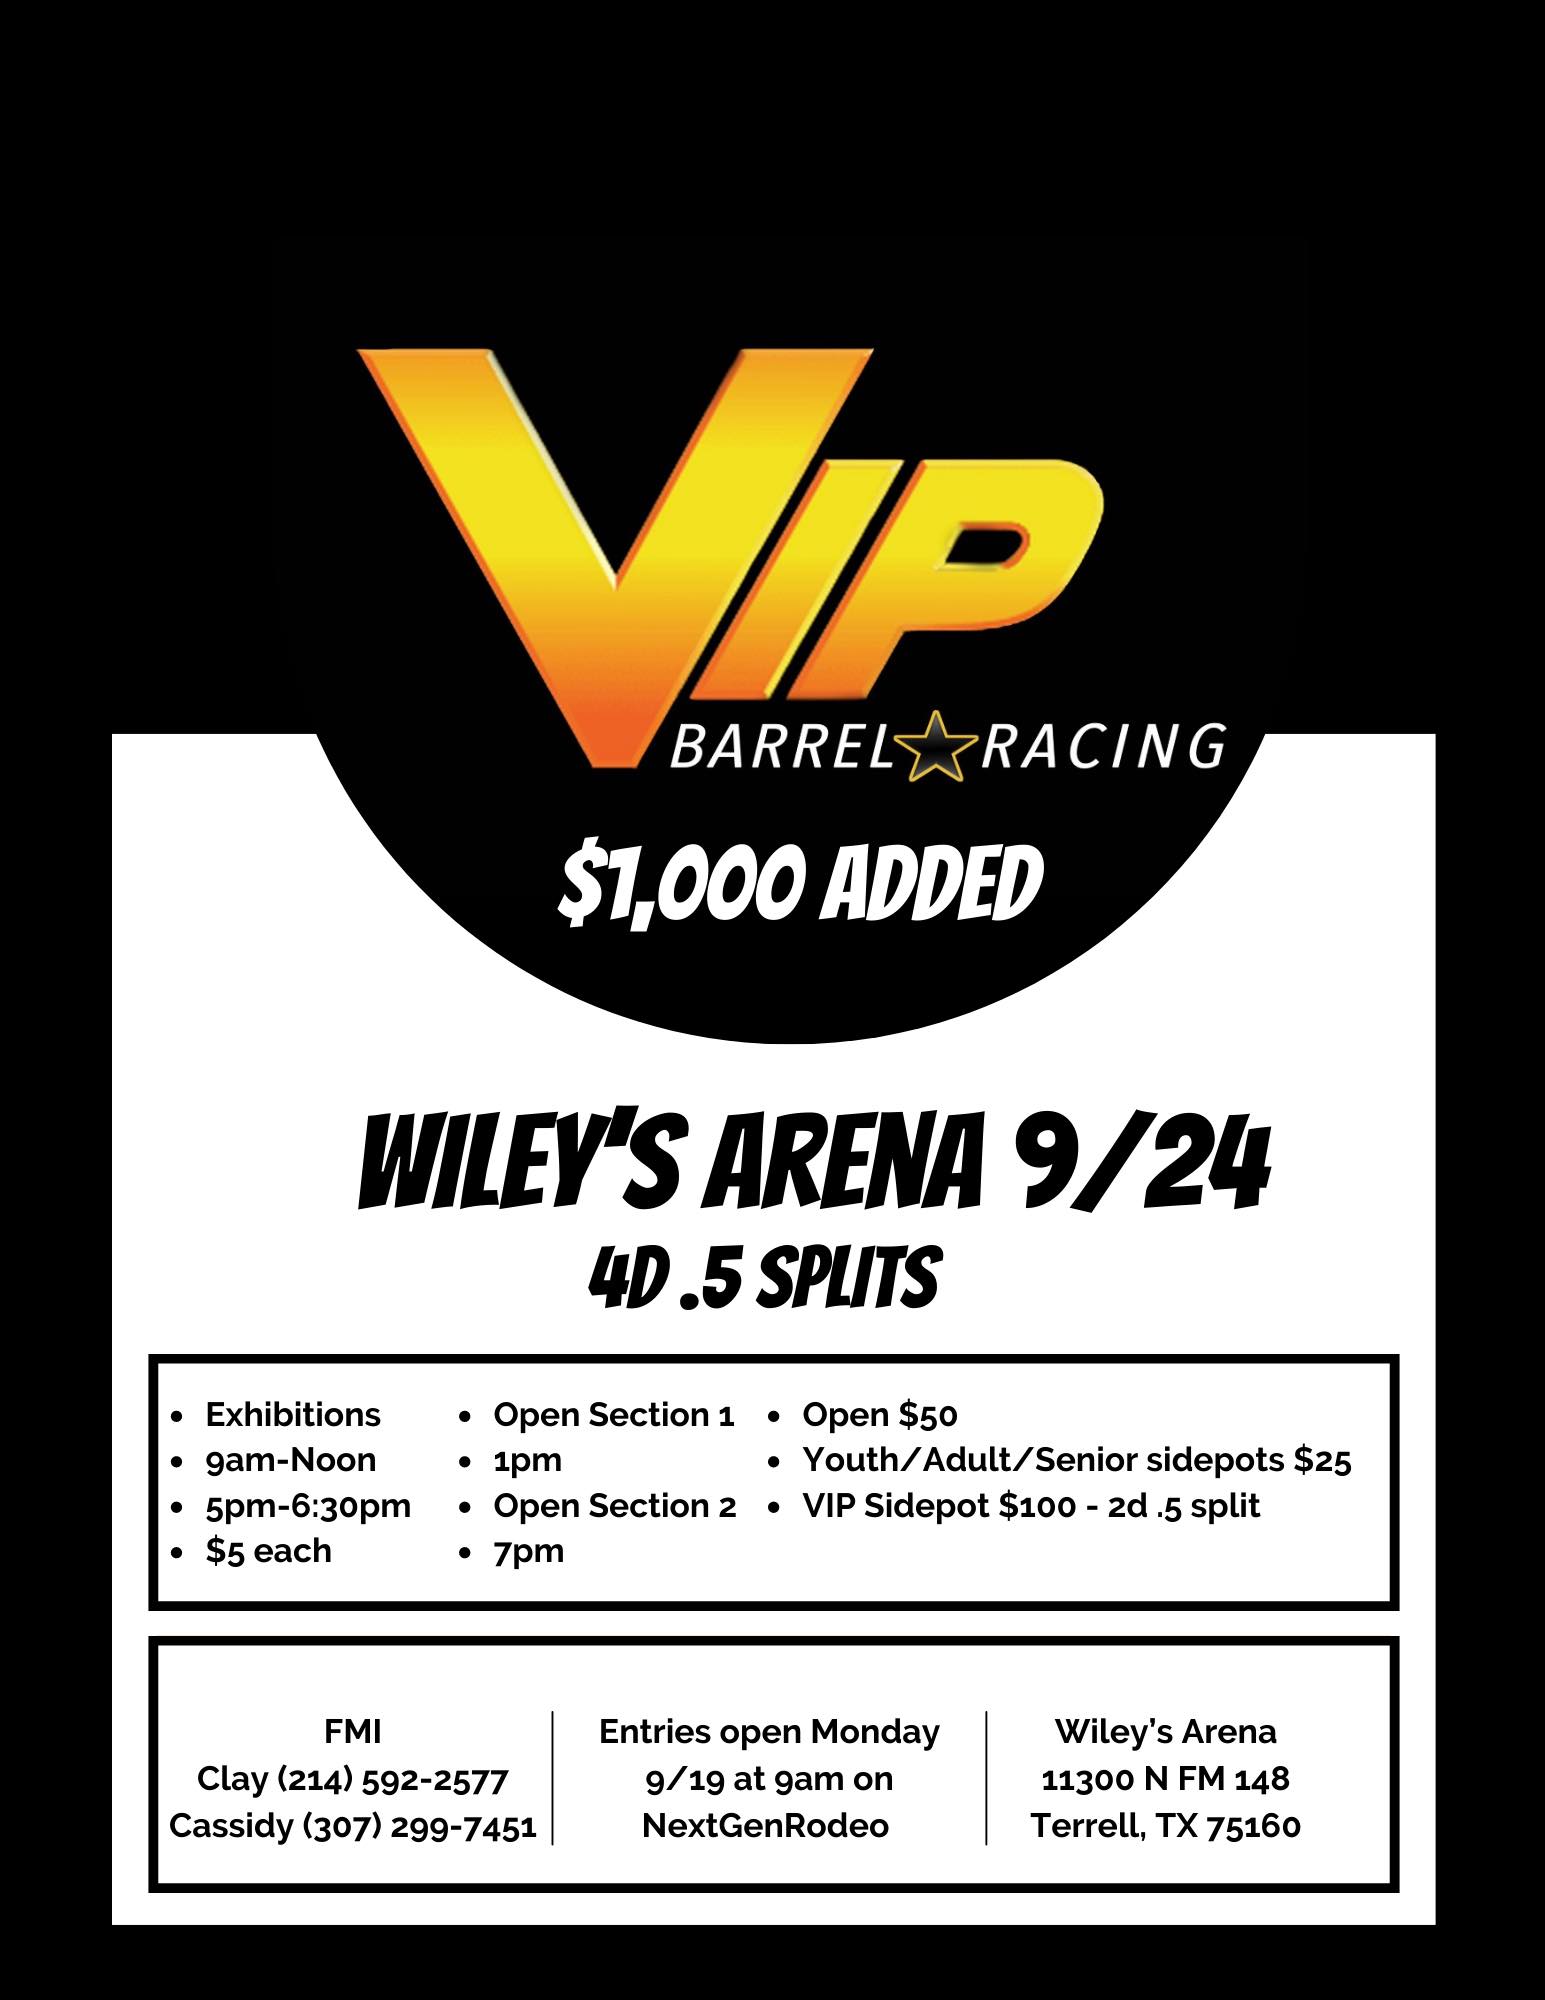 VIP Barrel Racing